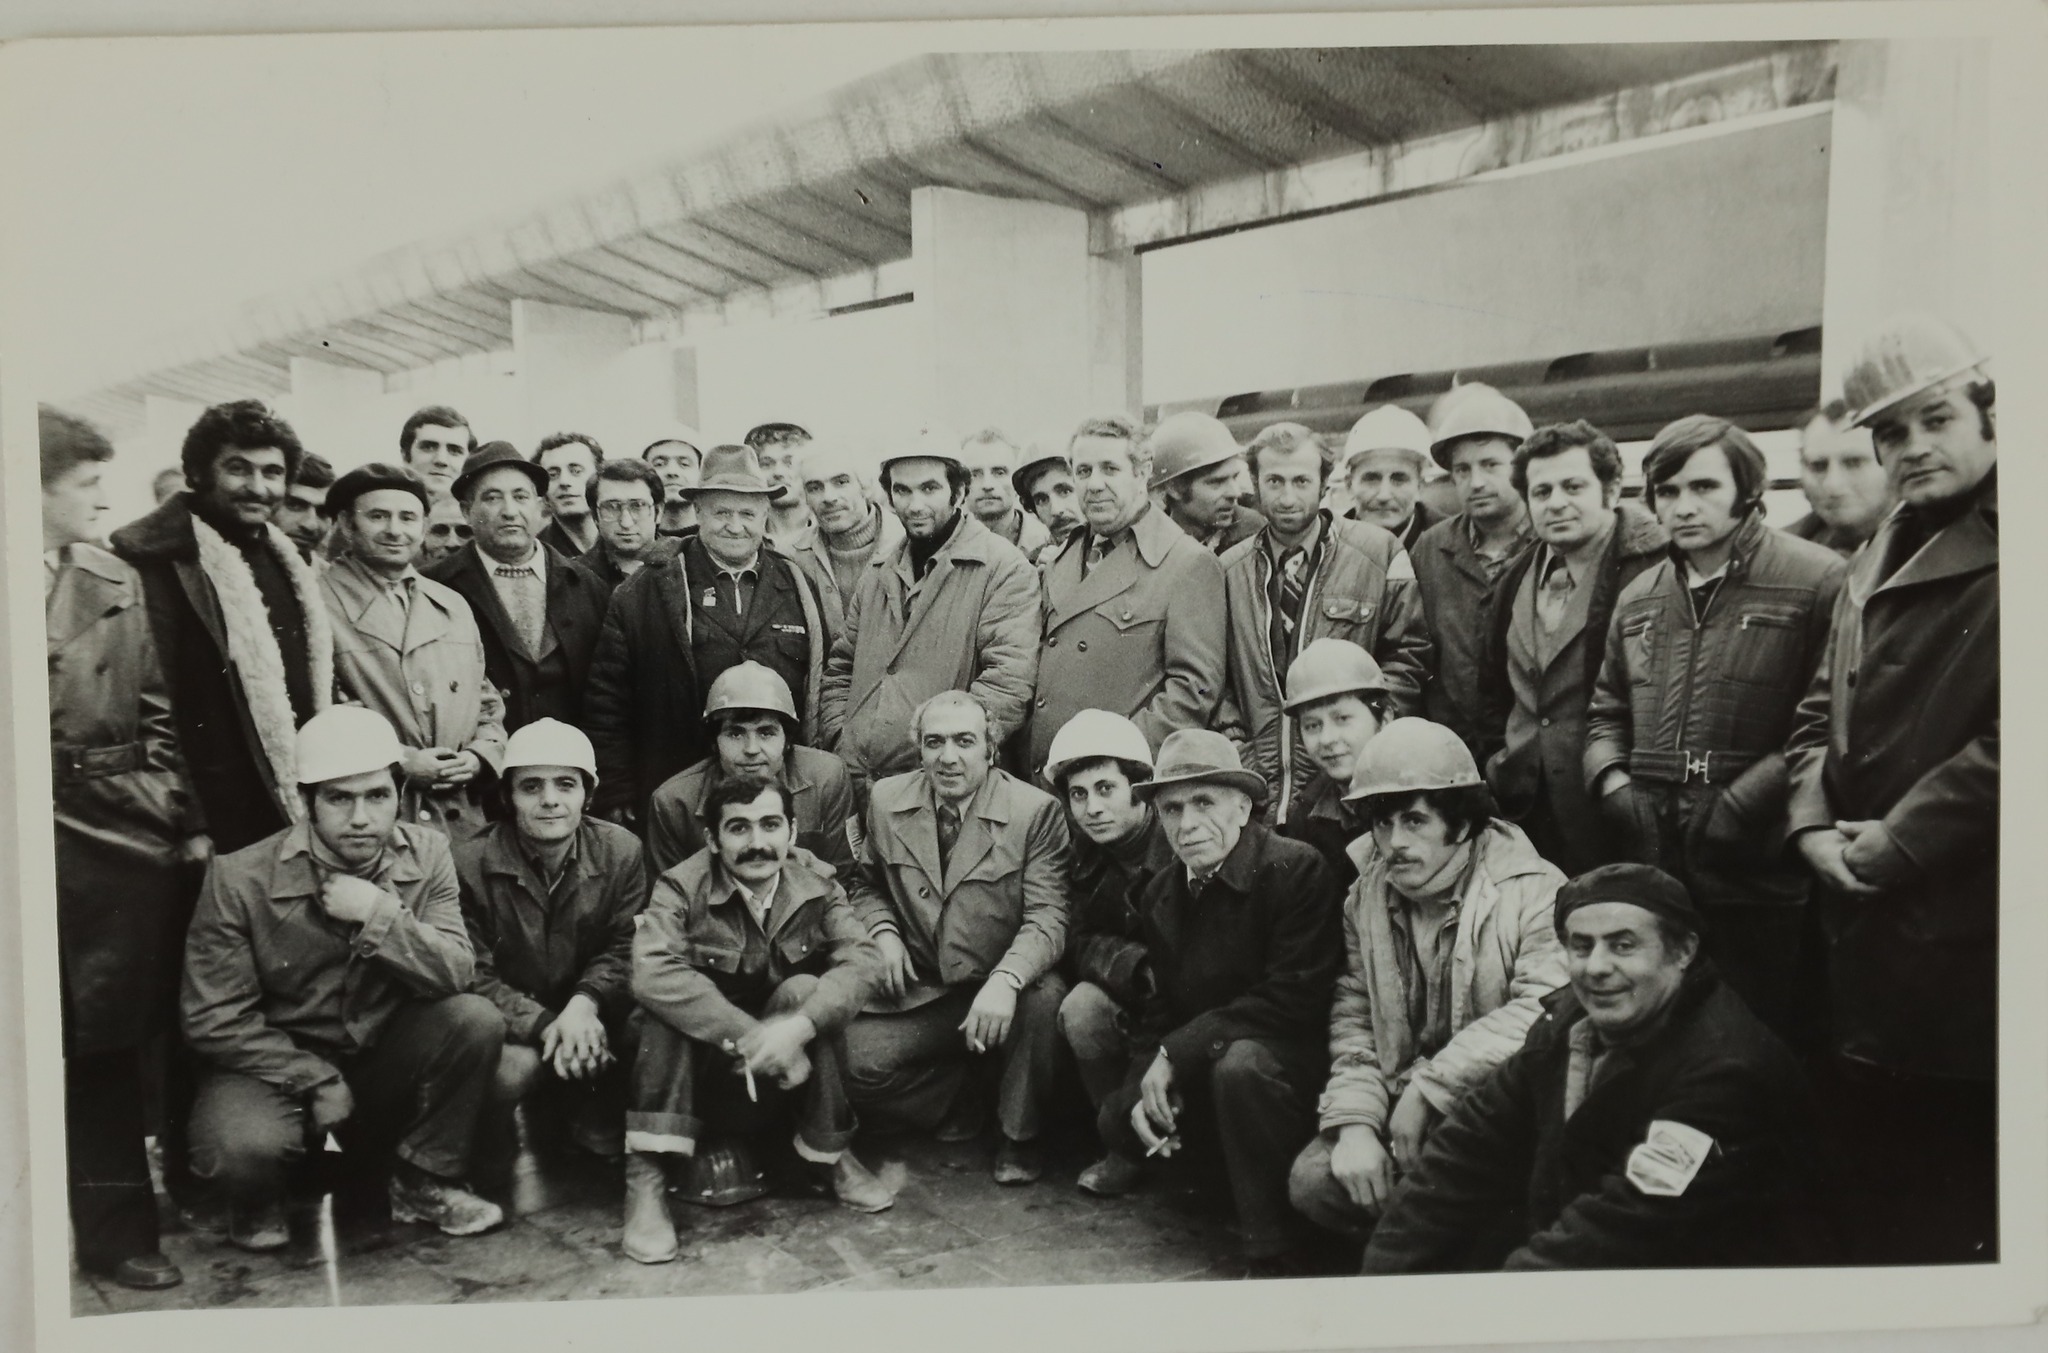 43 տարի առաջ մարտի 7-ին հանդիսավոր արարողությամբ բացվեց Երևանի մետրոպոլիտենը